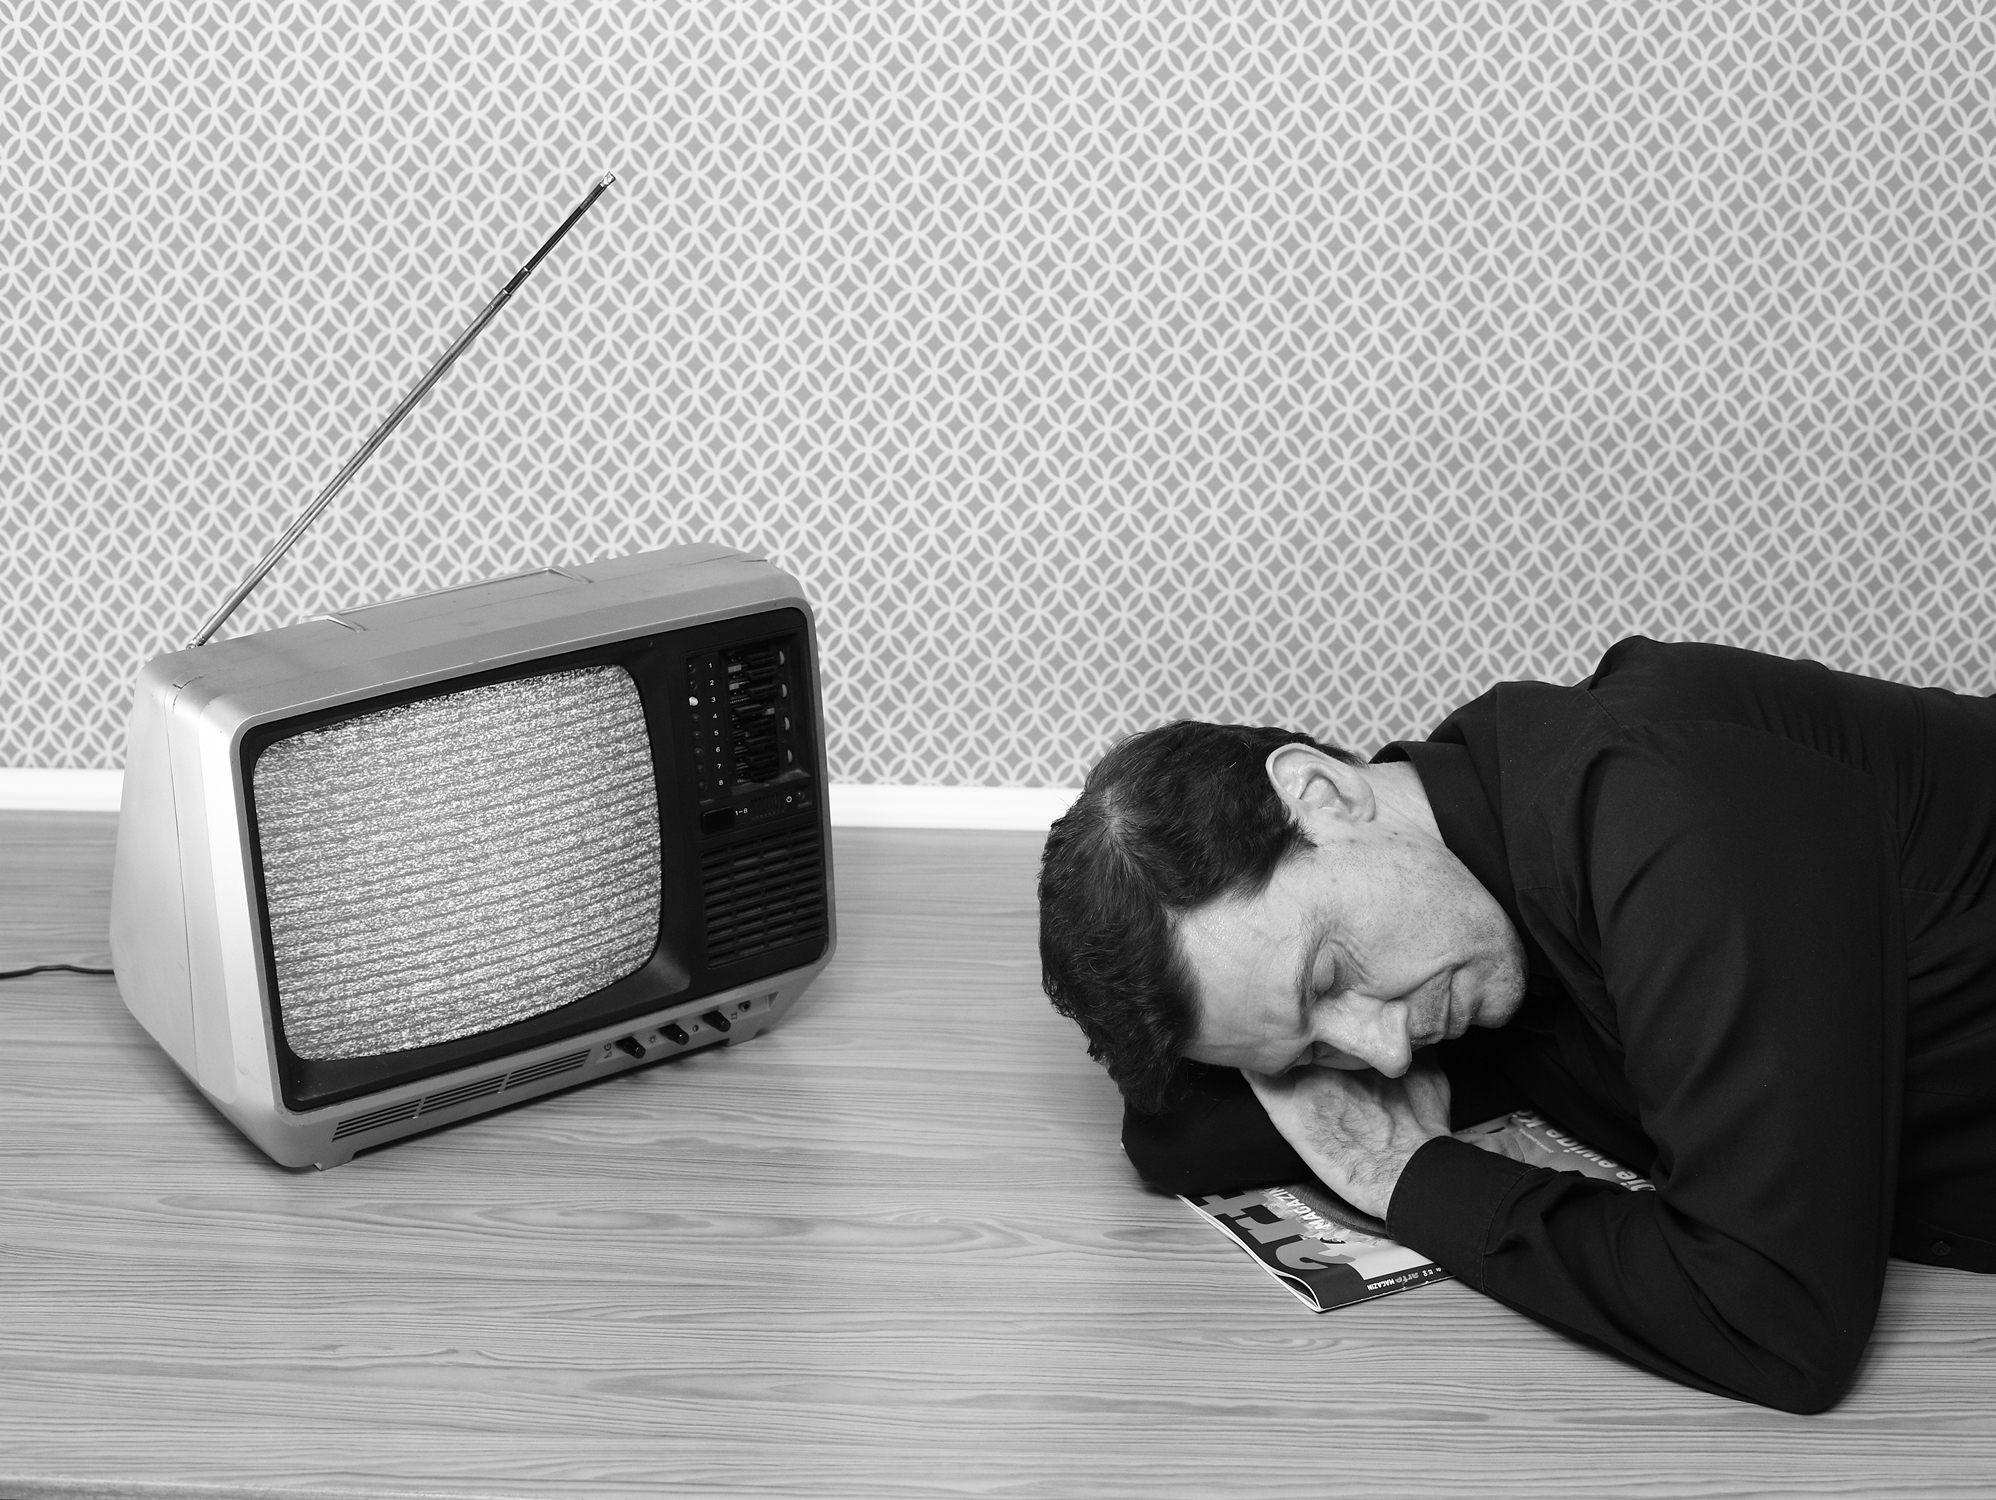 Tired of watching TV by Jürgen Sobkowiak